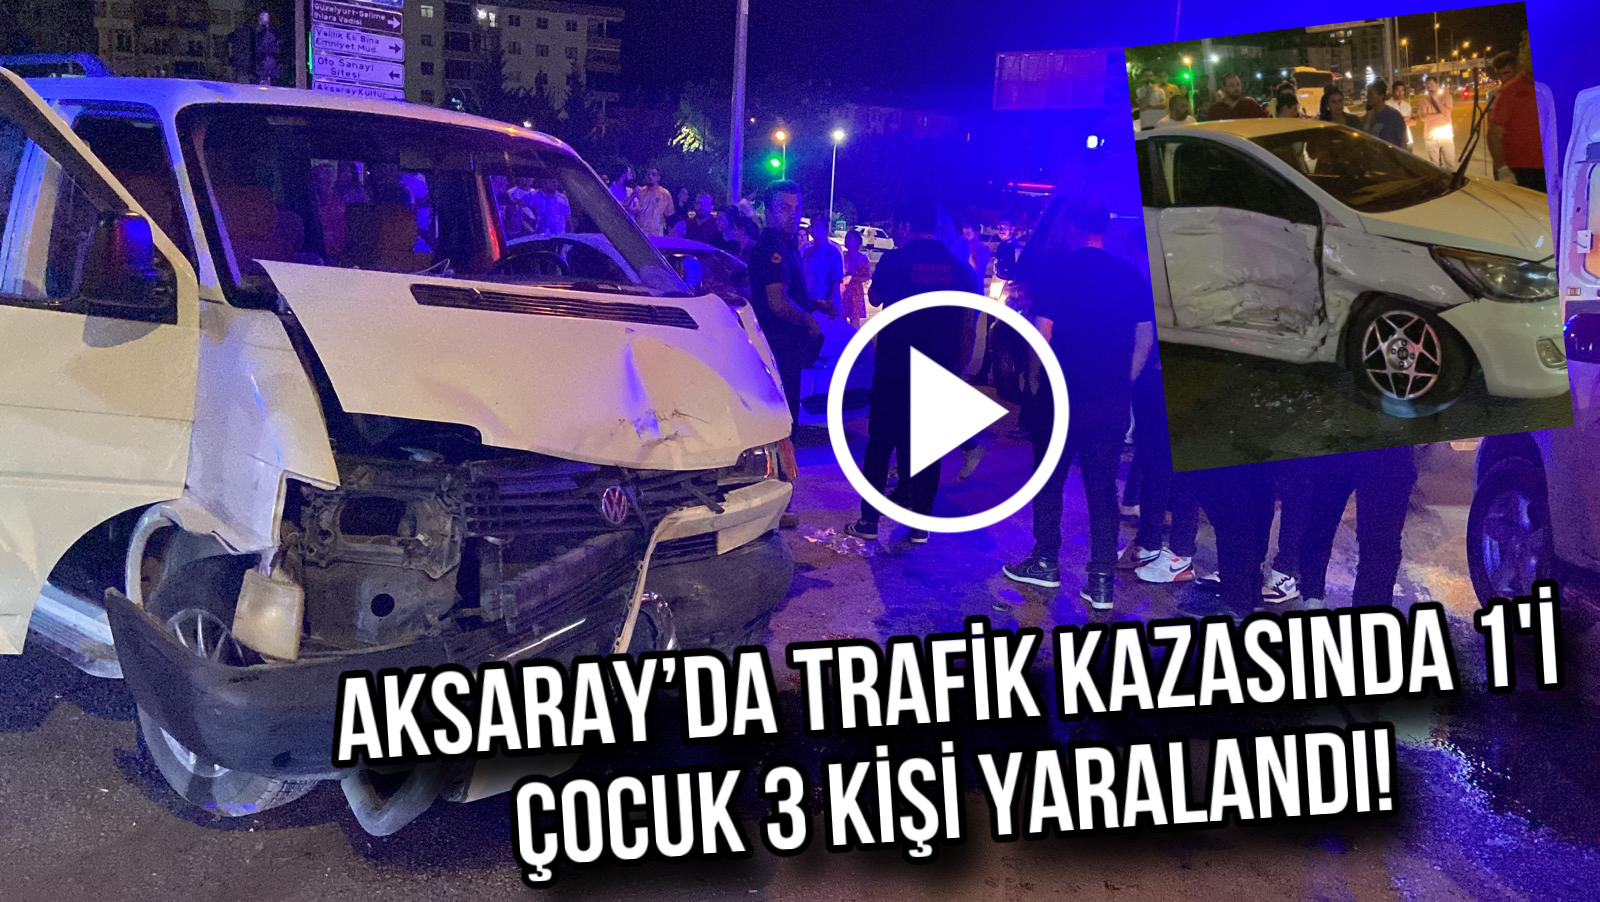 Aksaray’da trafik kazasında 1’i çocuk 3 kişi yaralandı!